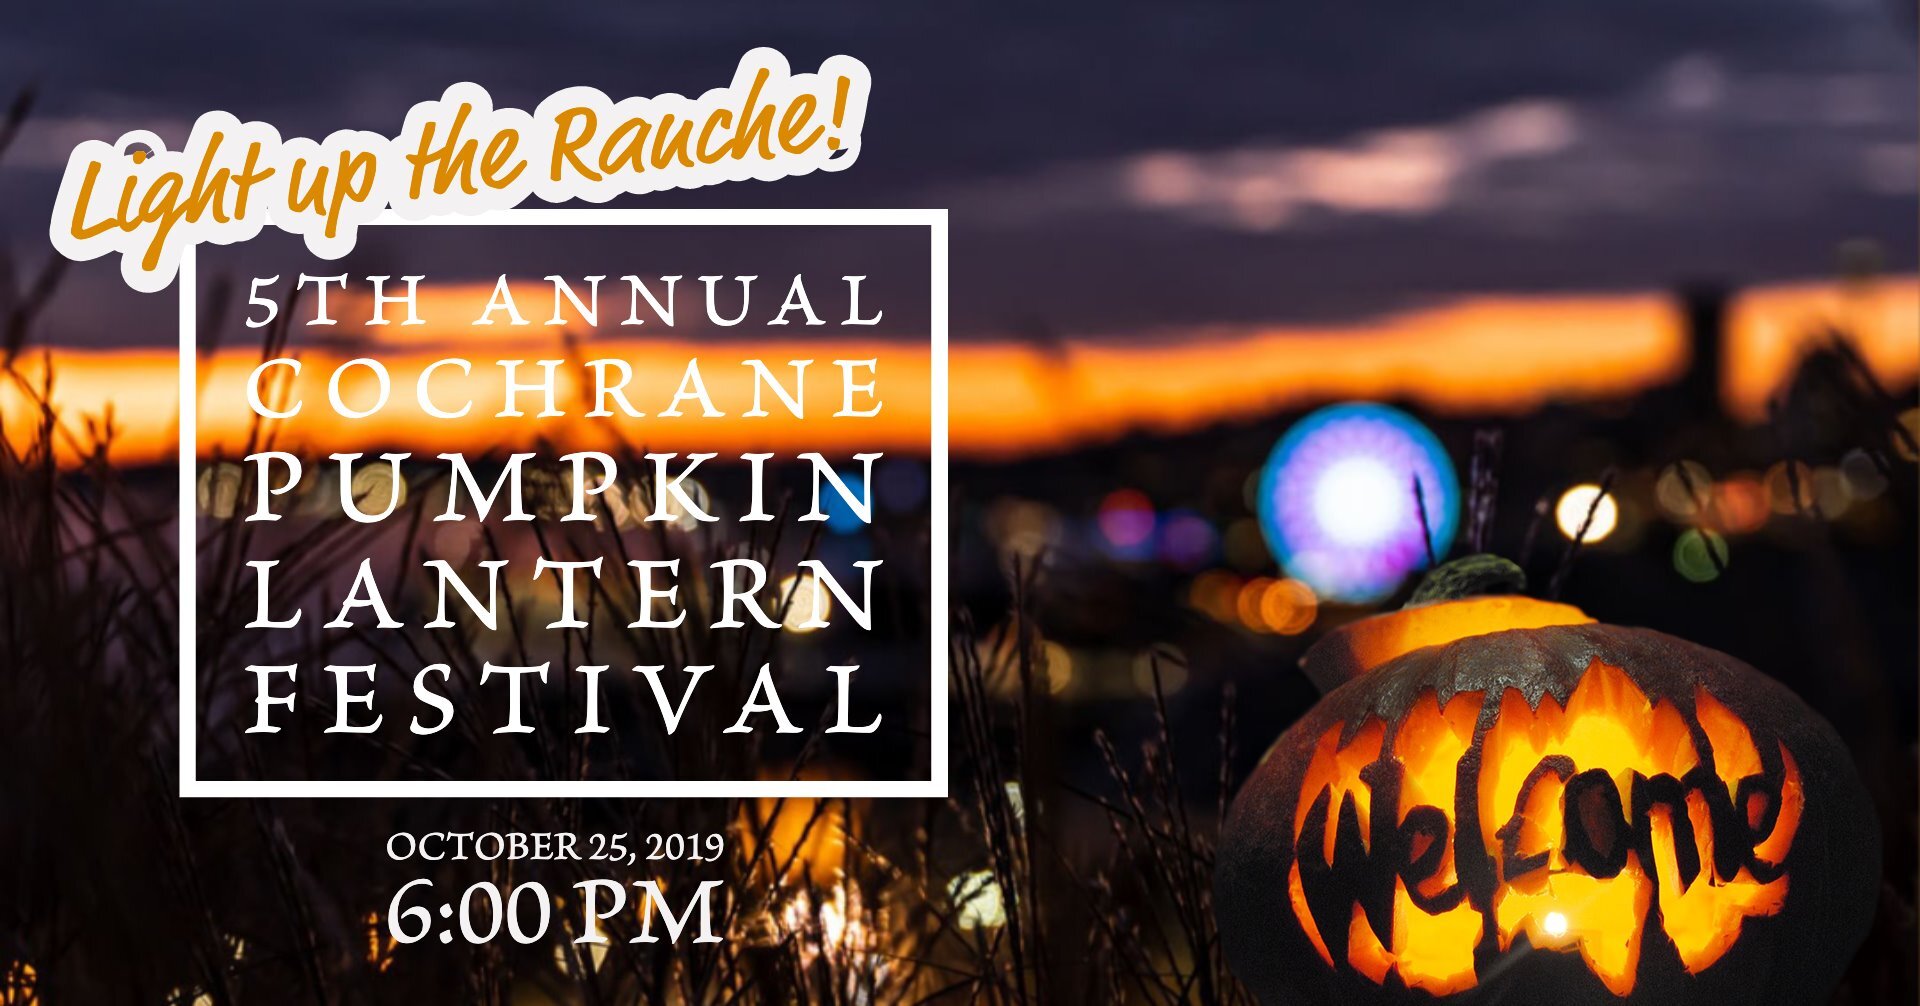 5th Annual Cochrane Pumpkin Lantern Festival - Cochrane Ranche, October 25th from 6pm to 9pm